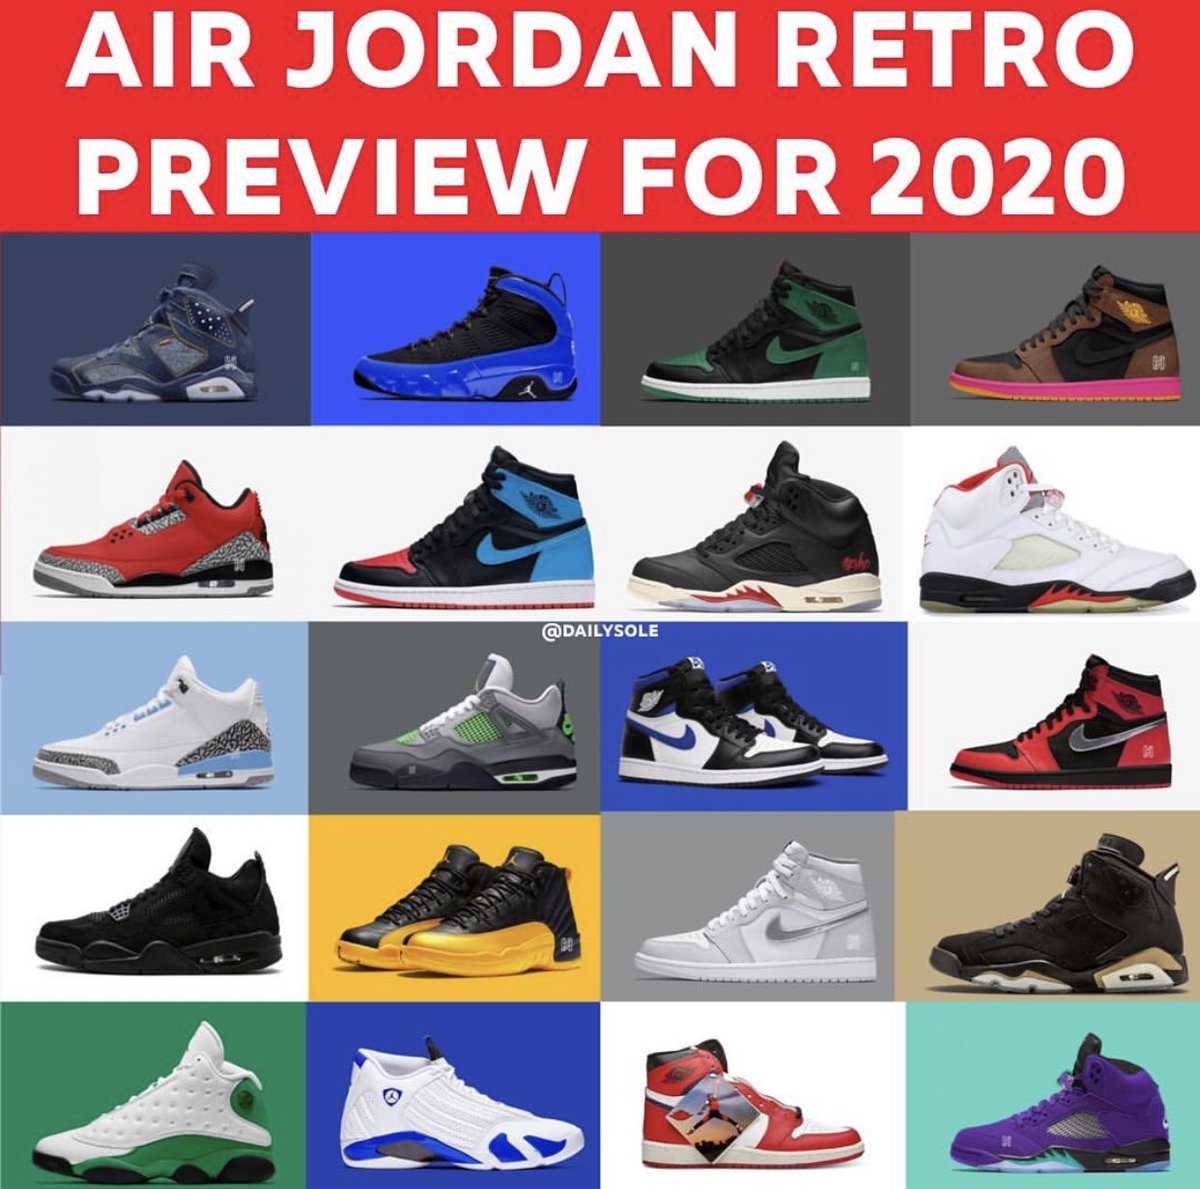 jordans that release in 2020